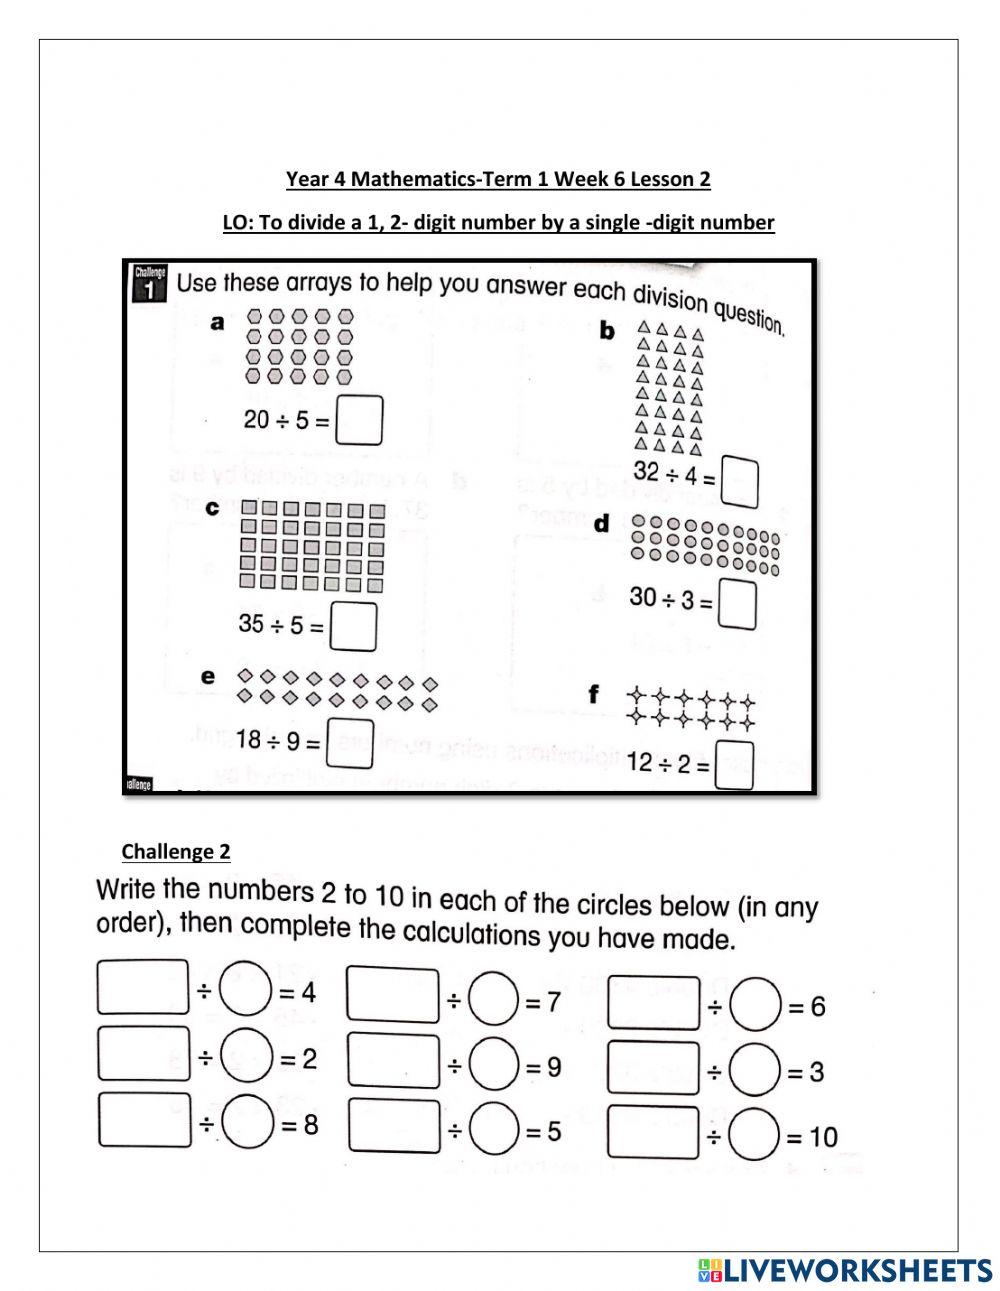 DIS Maths term1 week 6 lesson 2